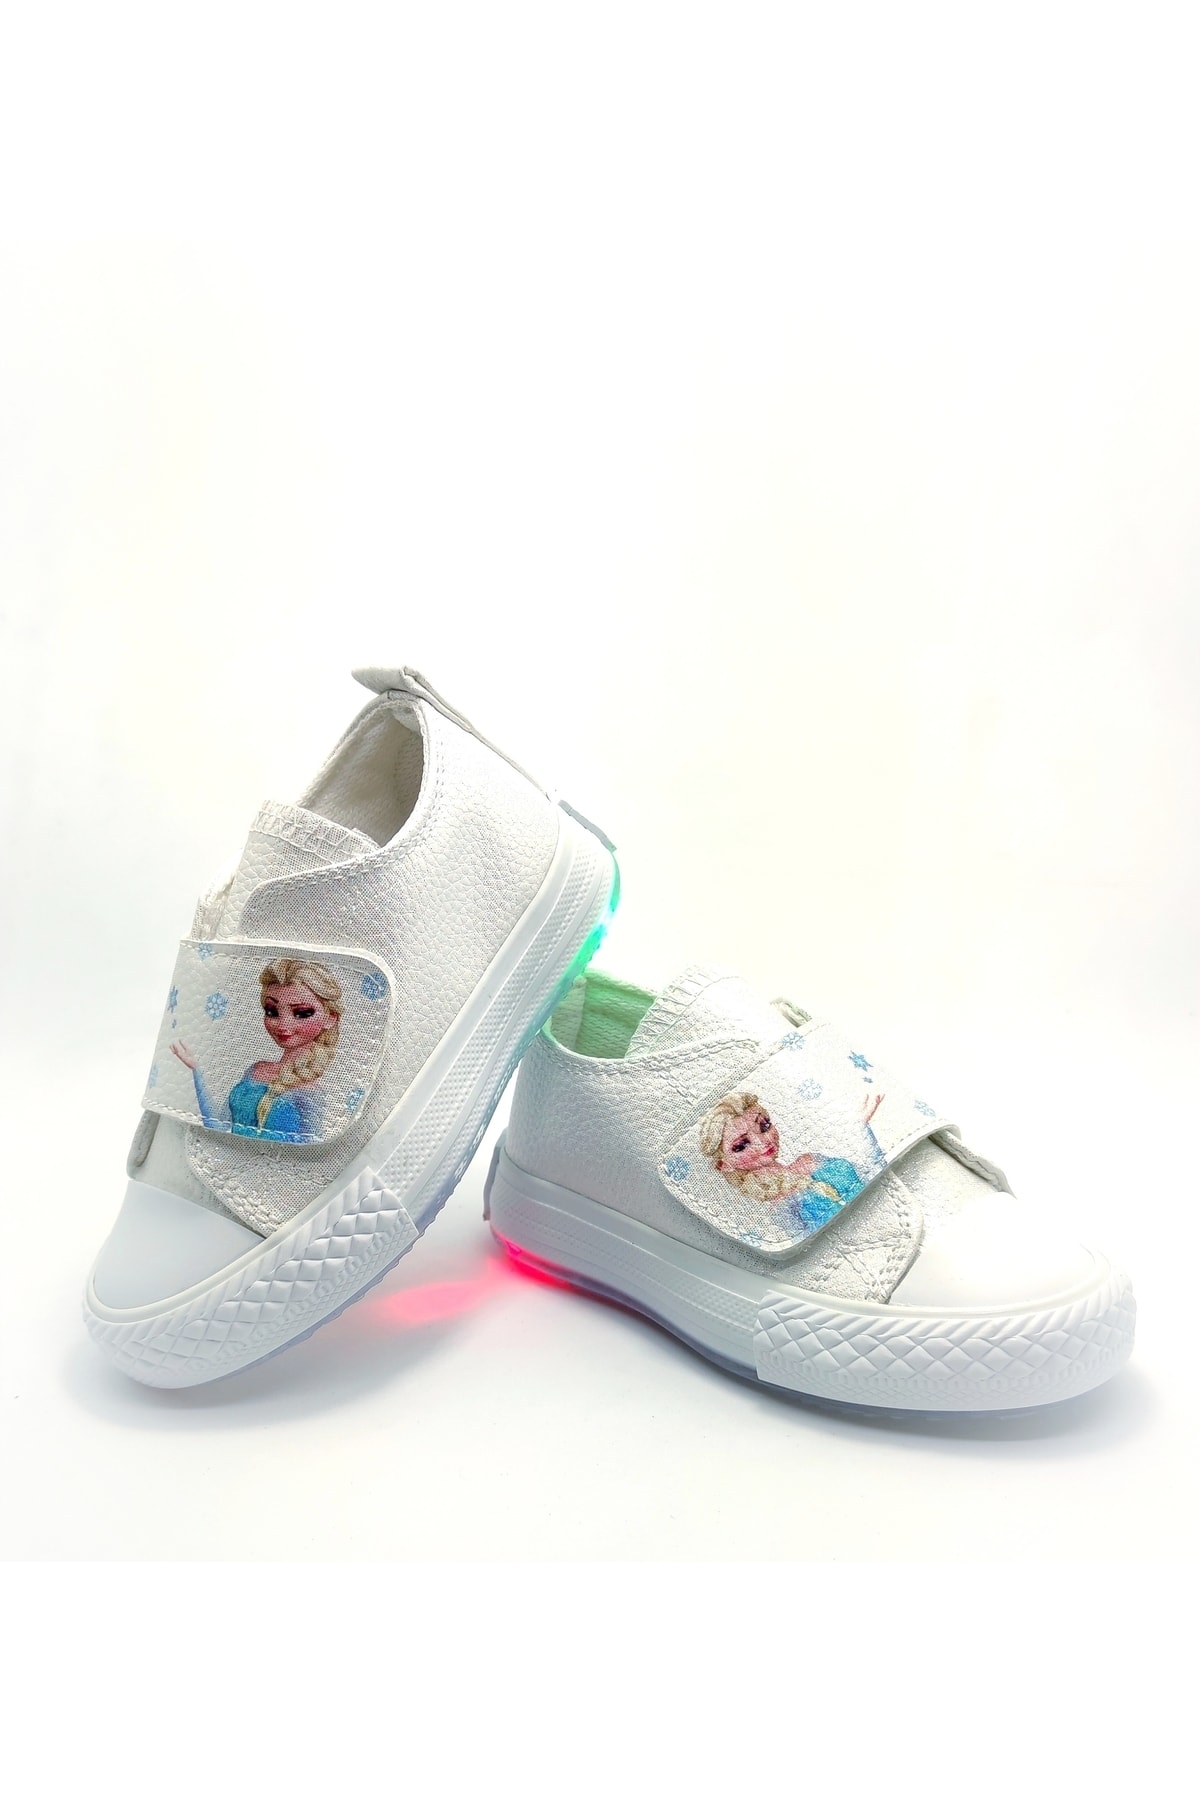 Papuccum Ortopedi Kız Çocuk Işıklı Anatomik Spor Ayakkabı